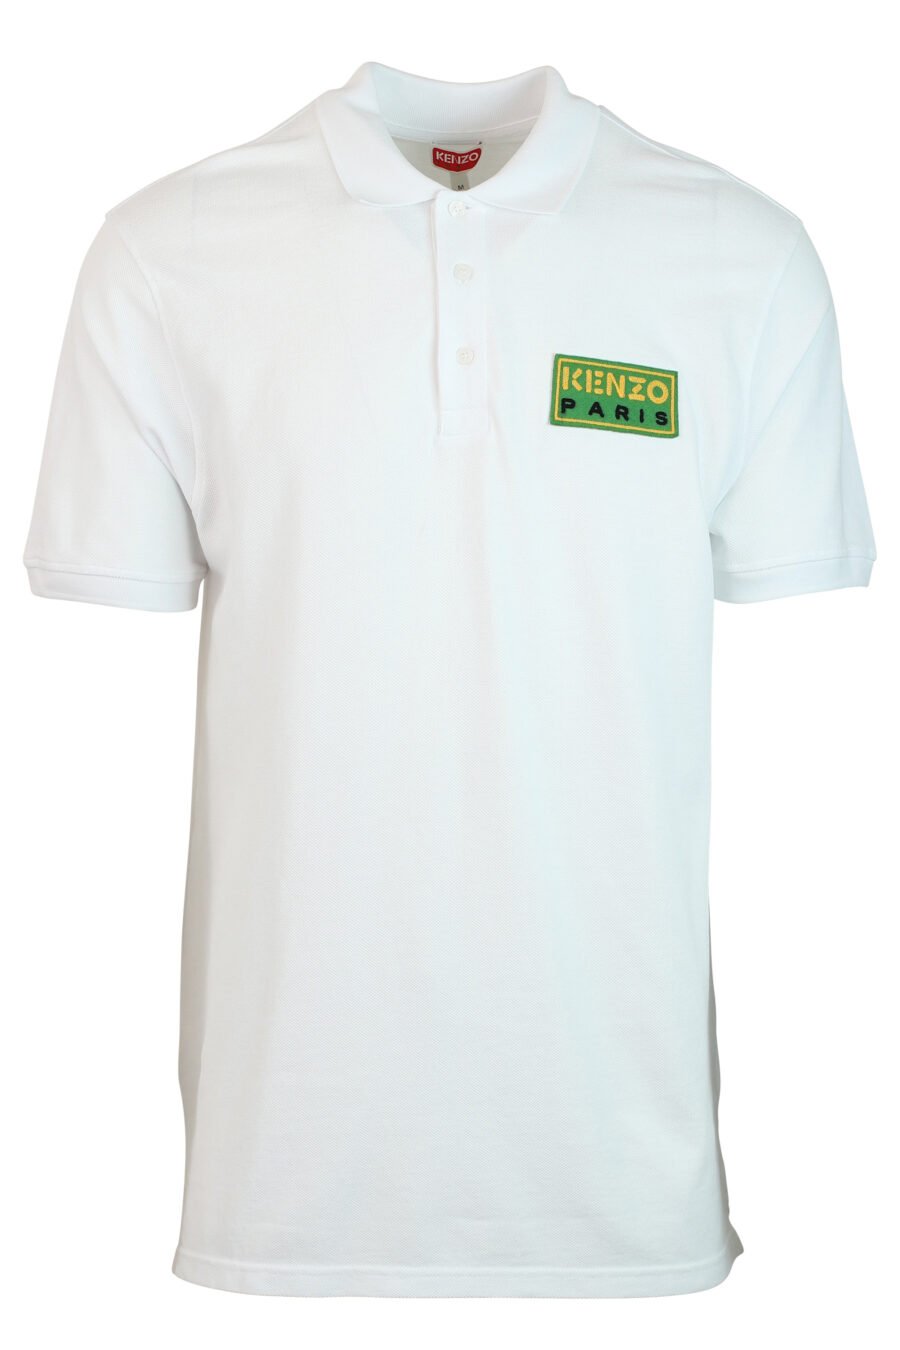 Weißes Poloshirt mit Minilogue "paris classic" grün - 3612230468825